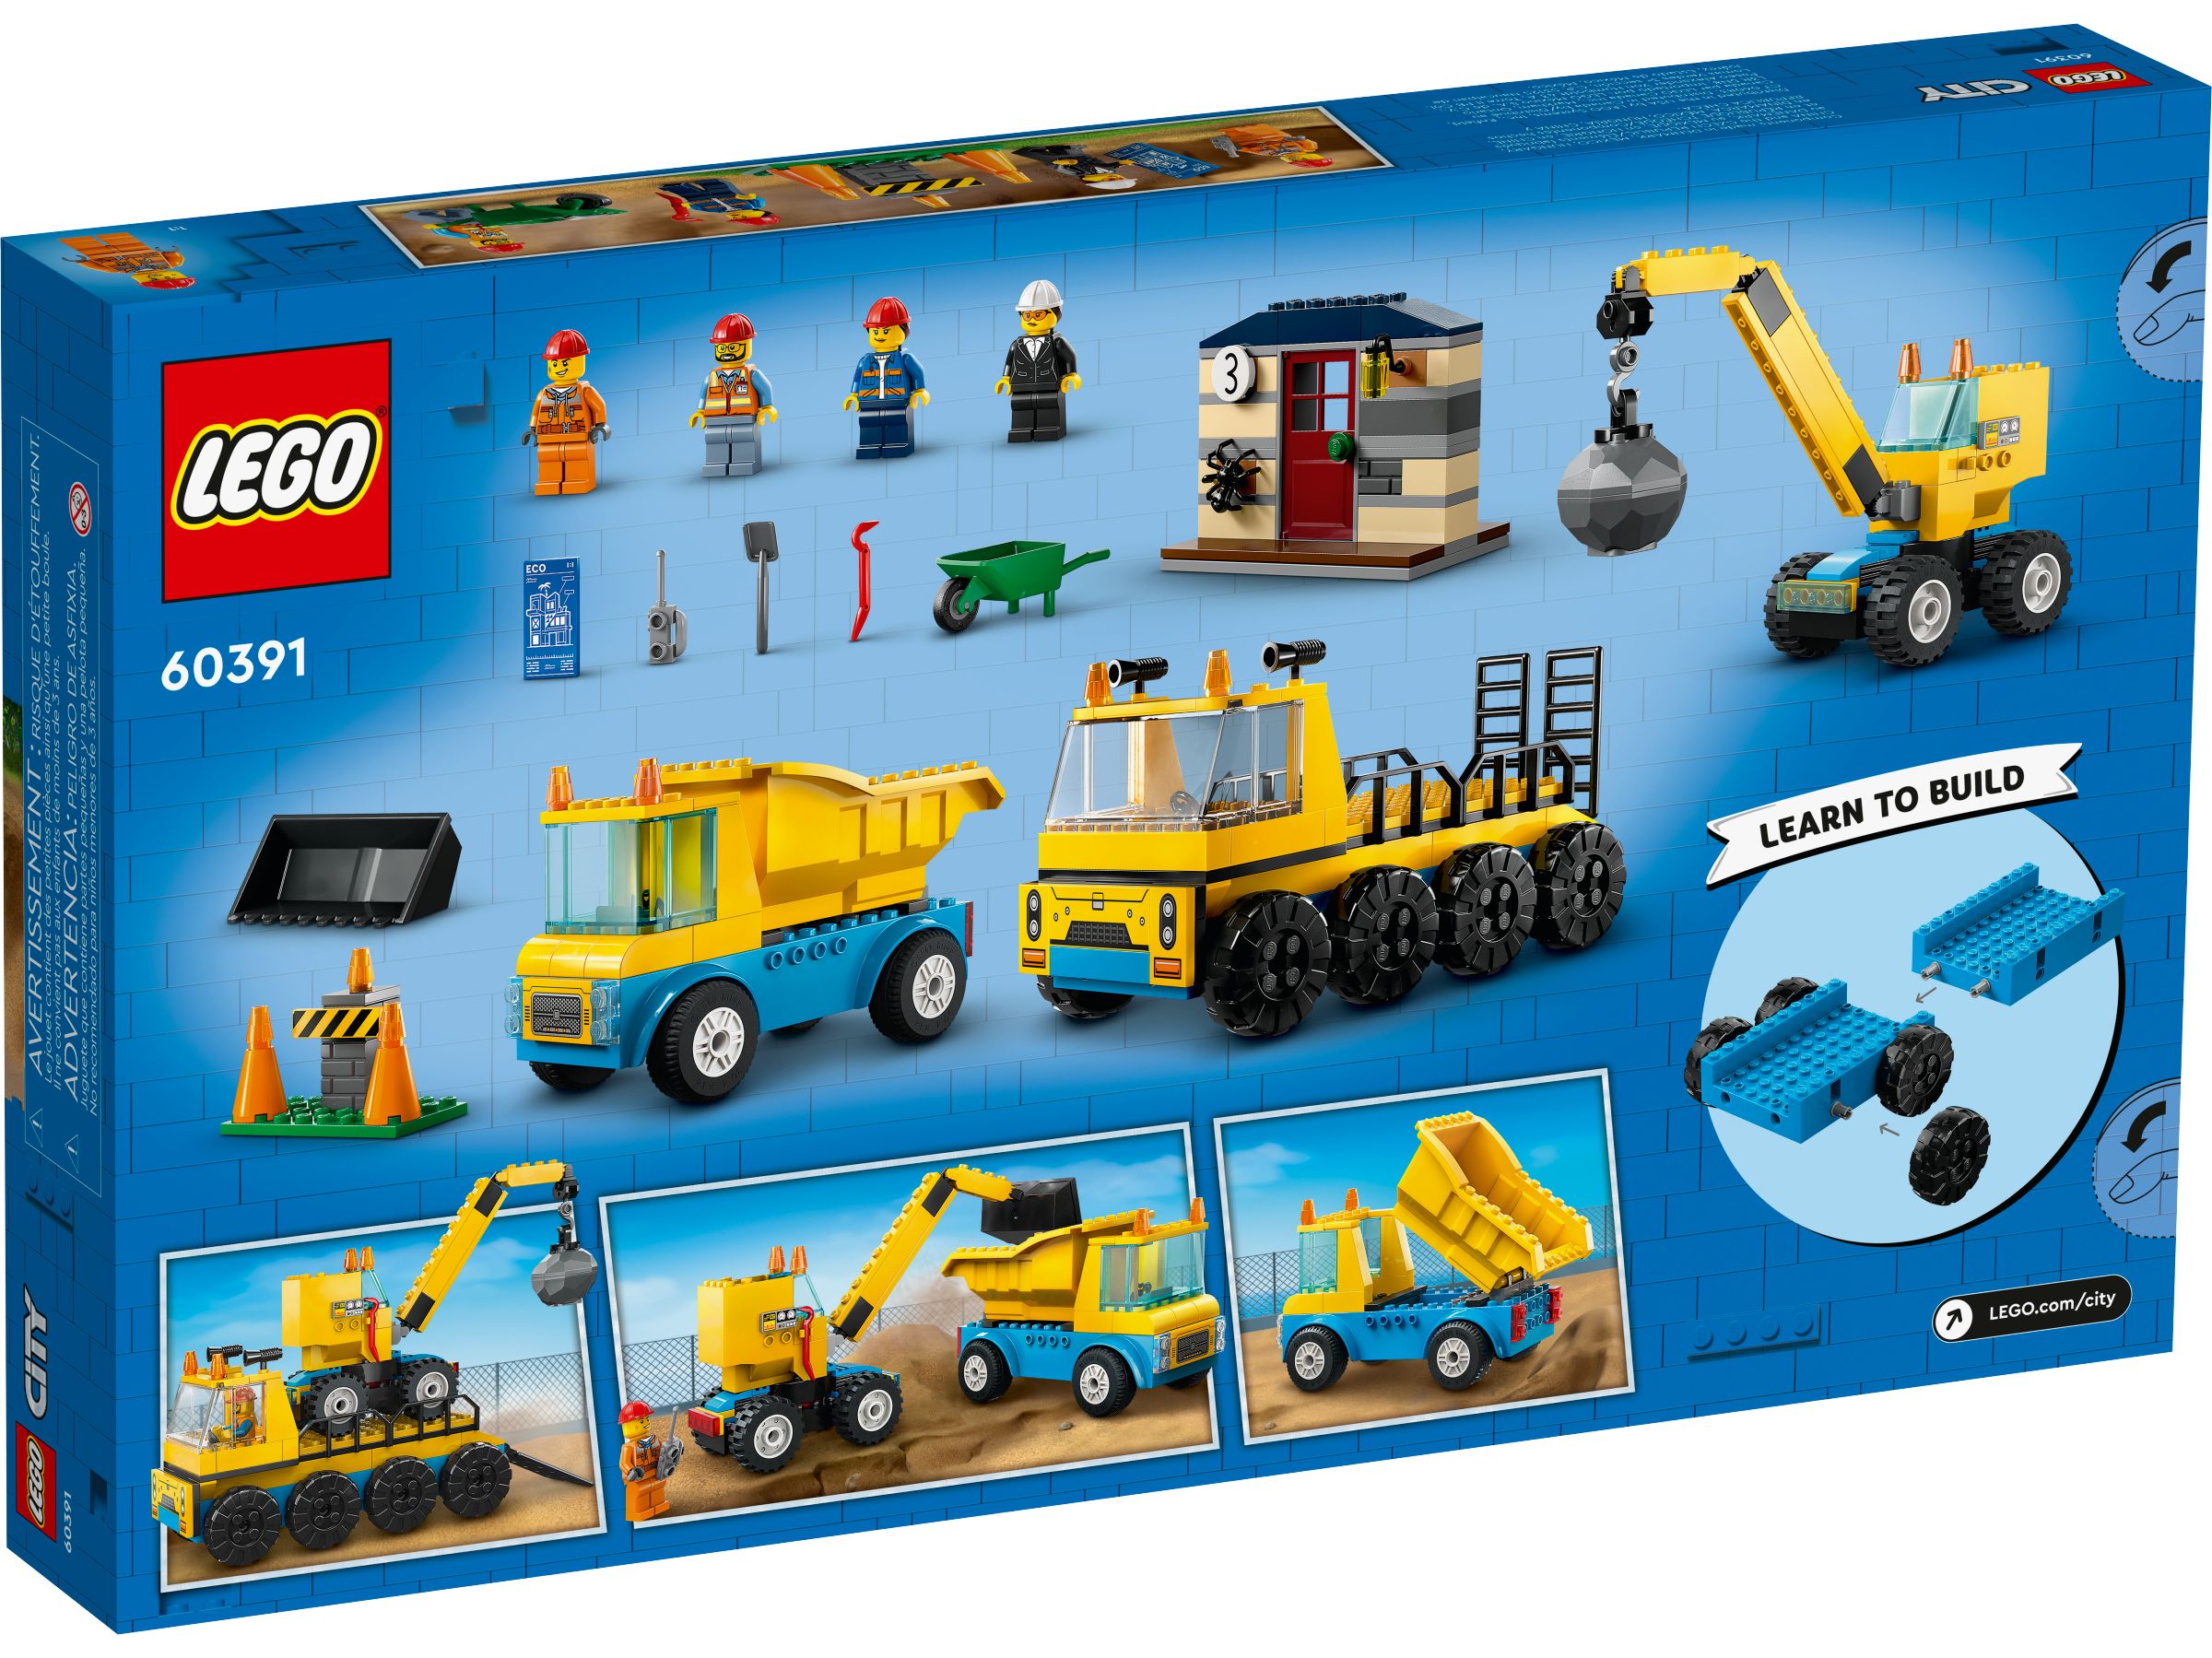 LEGO City 60391 Baufahrzeuge und Kran mit Abrissbirne LEGO_60391_alt5.jpg